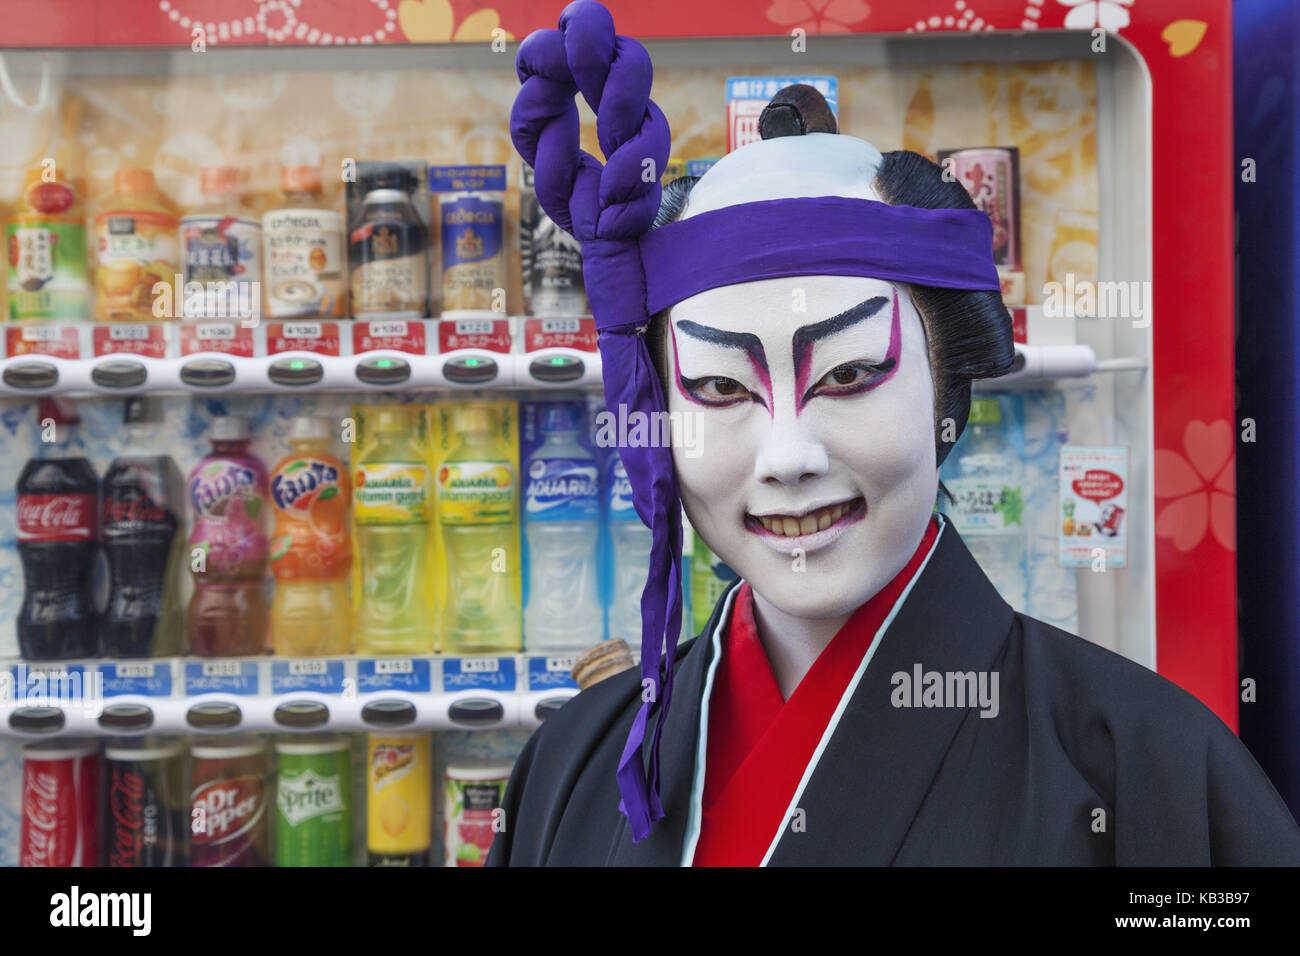 Japón, Honshu, Tokio, Asakusa, Jidai Matsuri festival, participante, vestuario, pintura facial, actor de kabuki, retrato, Foto de stock